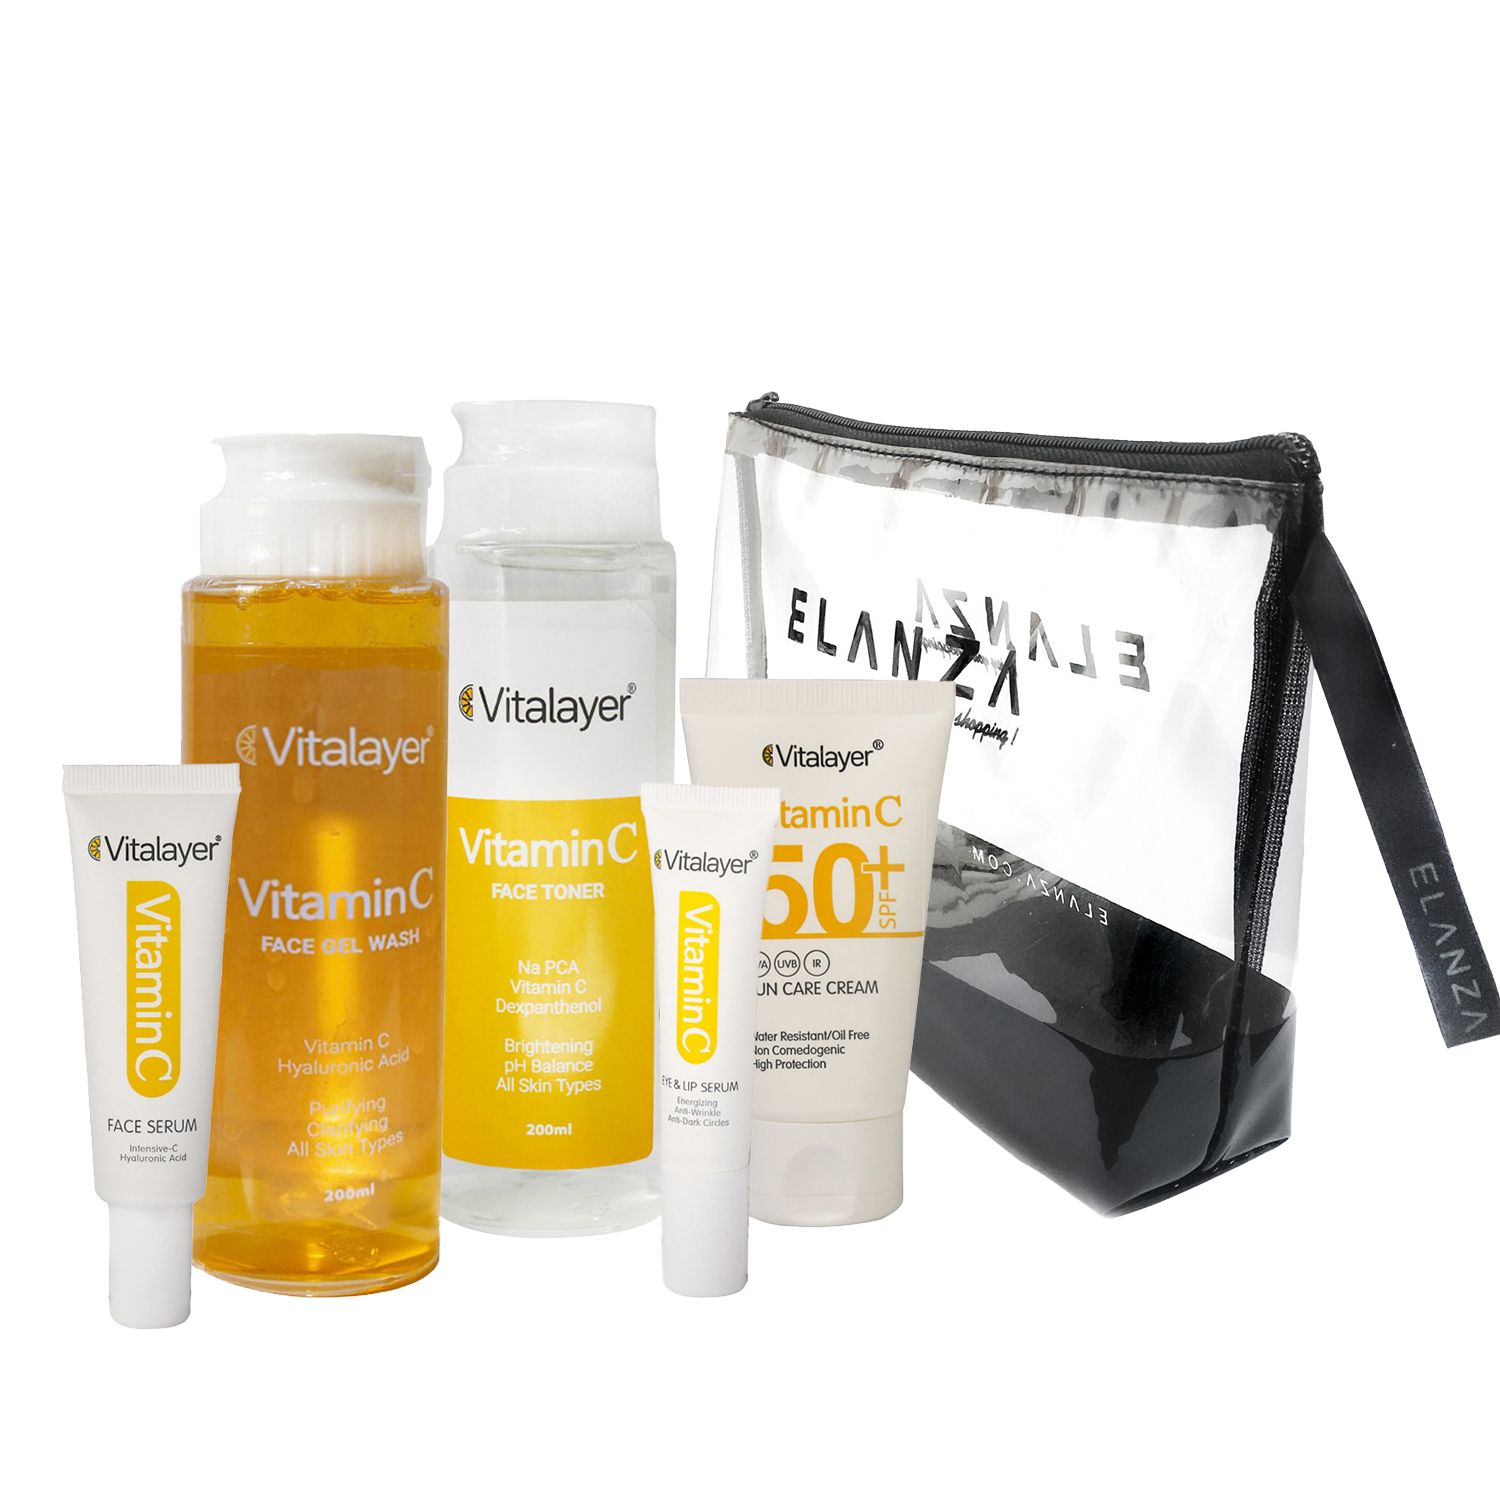 روتین پوستی روشن کننده ویتالیر مدل Vitamin C مجموعه 5 عددی همراه با یک کیف لوازم آرایش رایگان